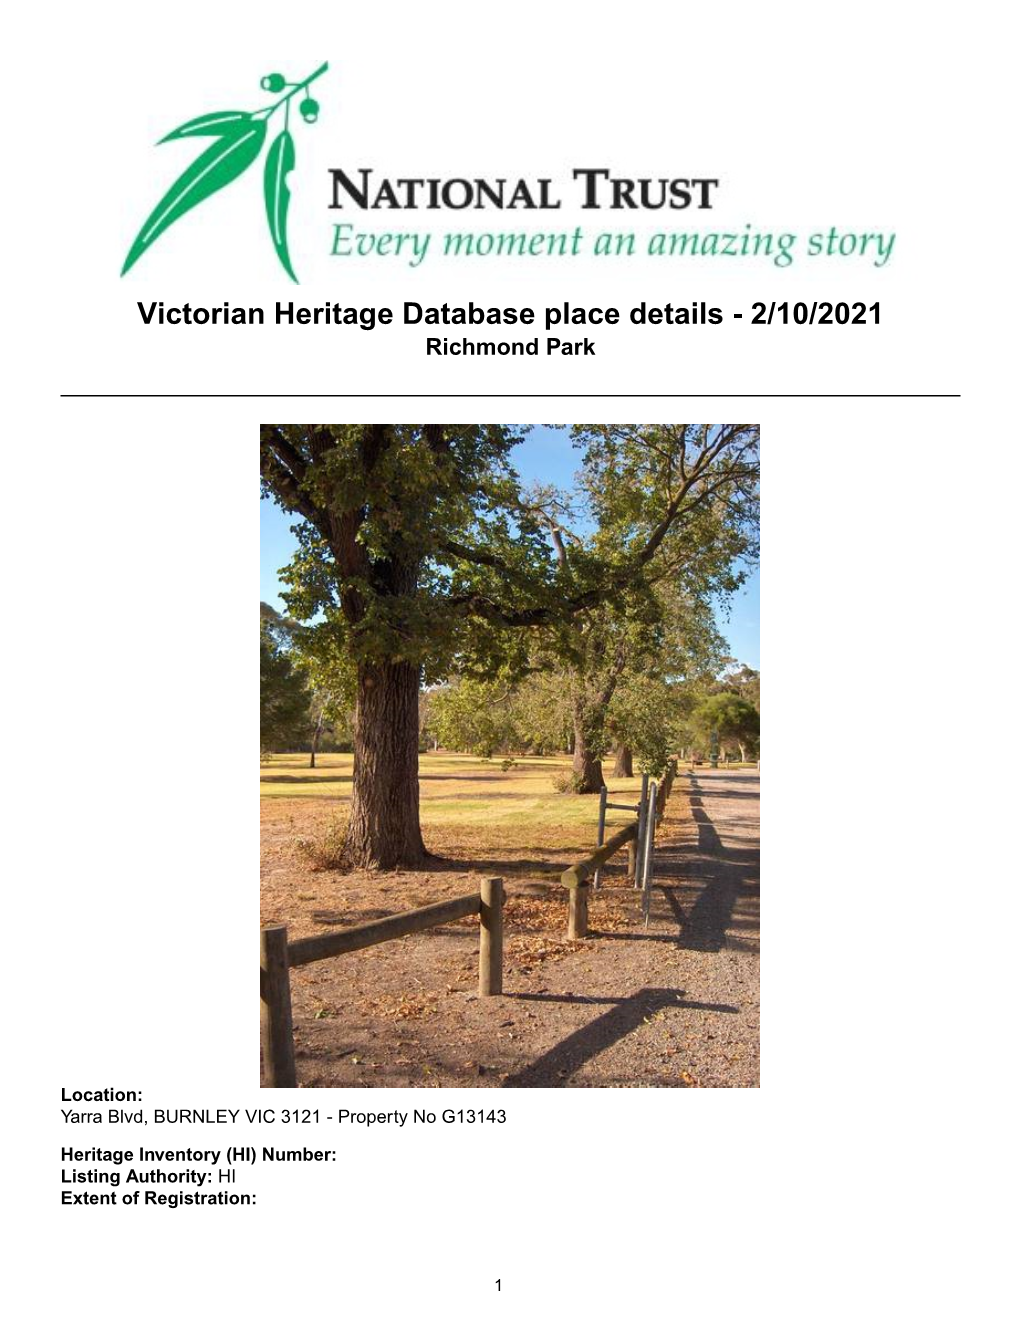 Victorian Heritage Database Place Details - 2/10/2021 Richmond Park